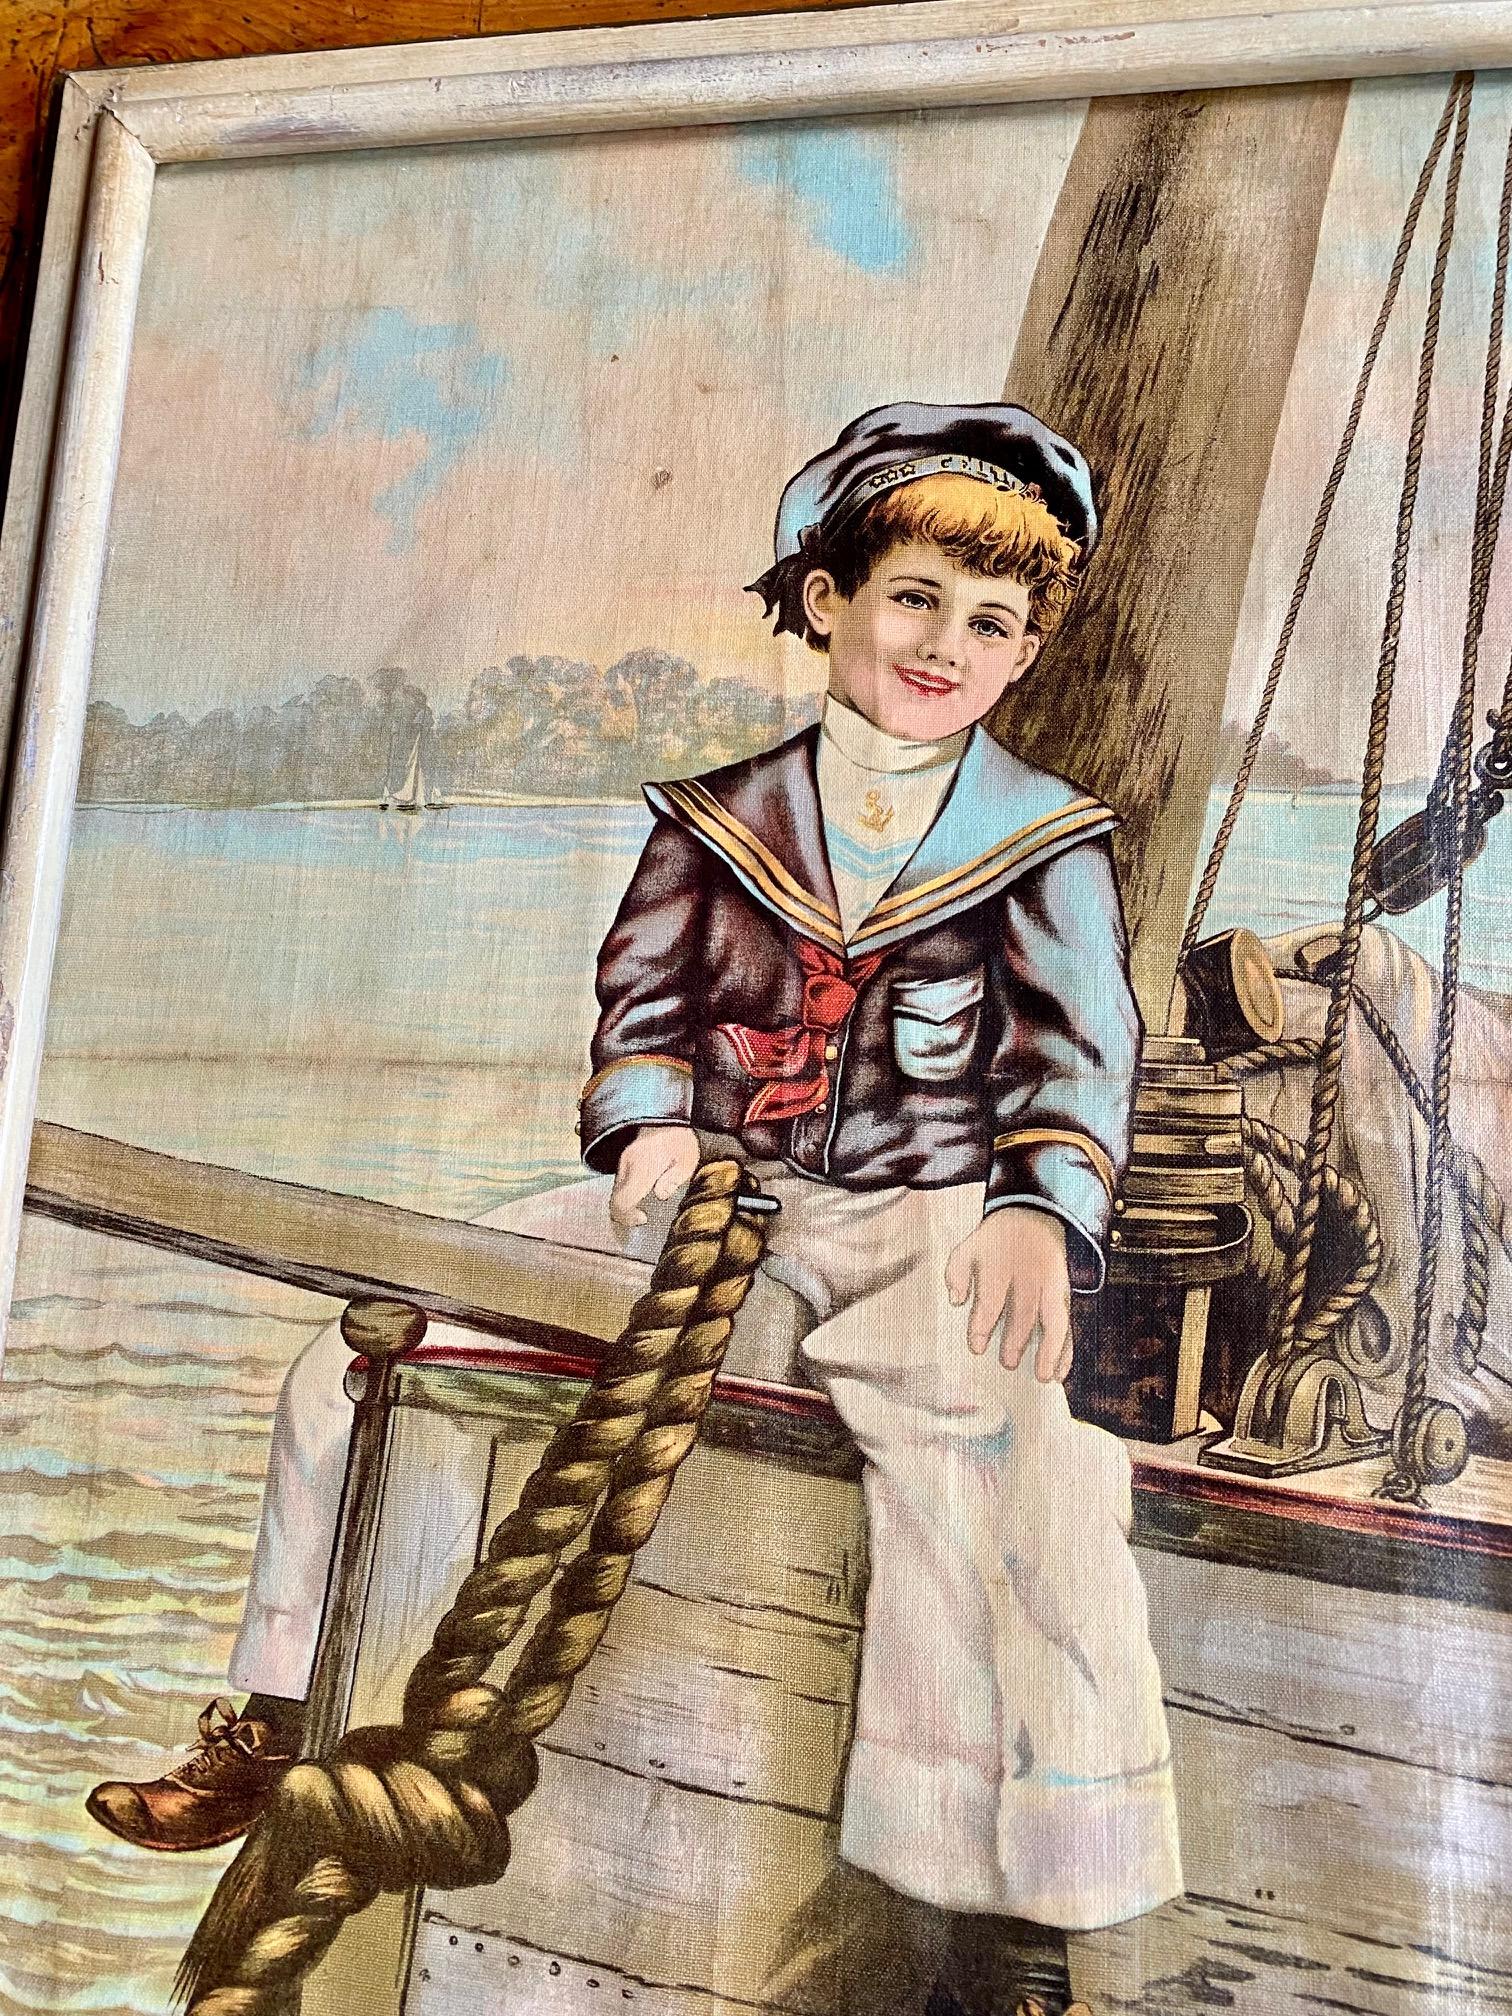 Chromolithographie d'un jeune marin du XIXe siècle, vers 1880, impression en couleur sur toile d'un jeune marin américain assis à cheval sur un beaupré. Une image classique et charmante avec beaucoup de détails (regardez le tressage détaillé des